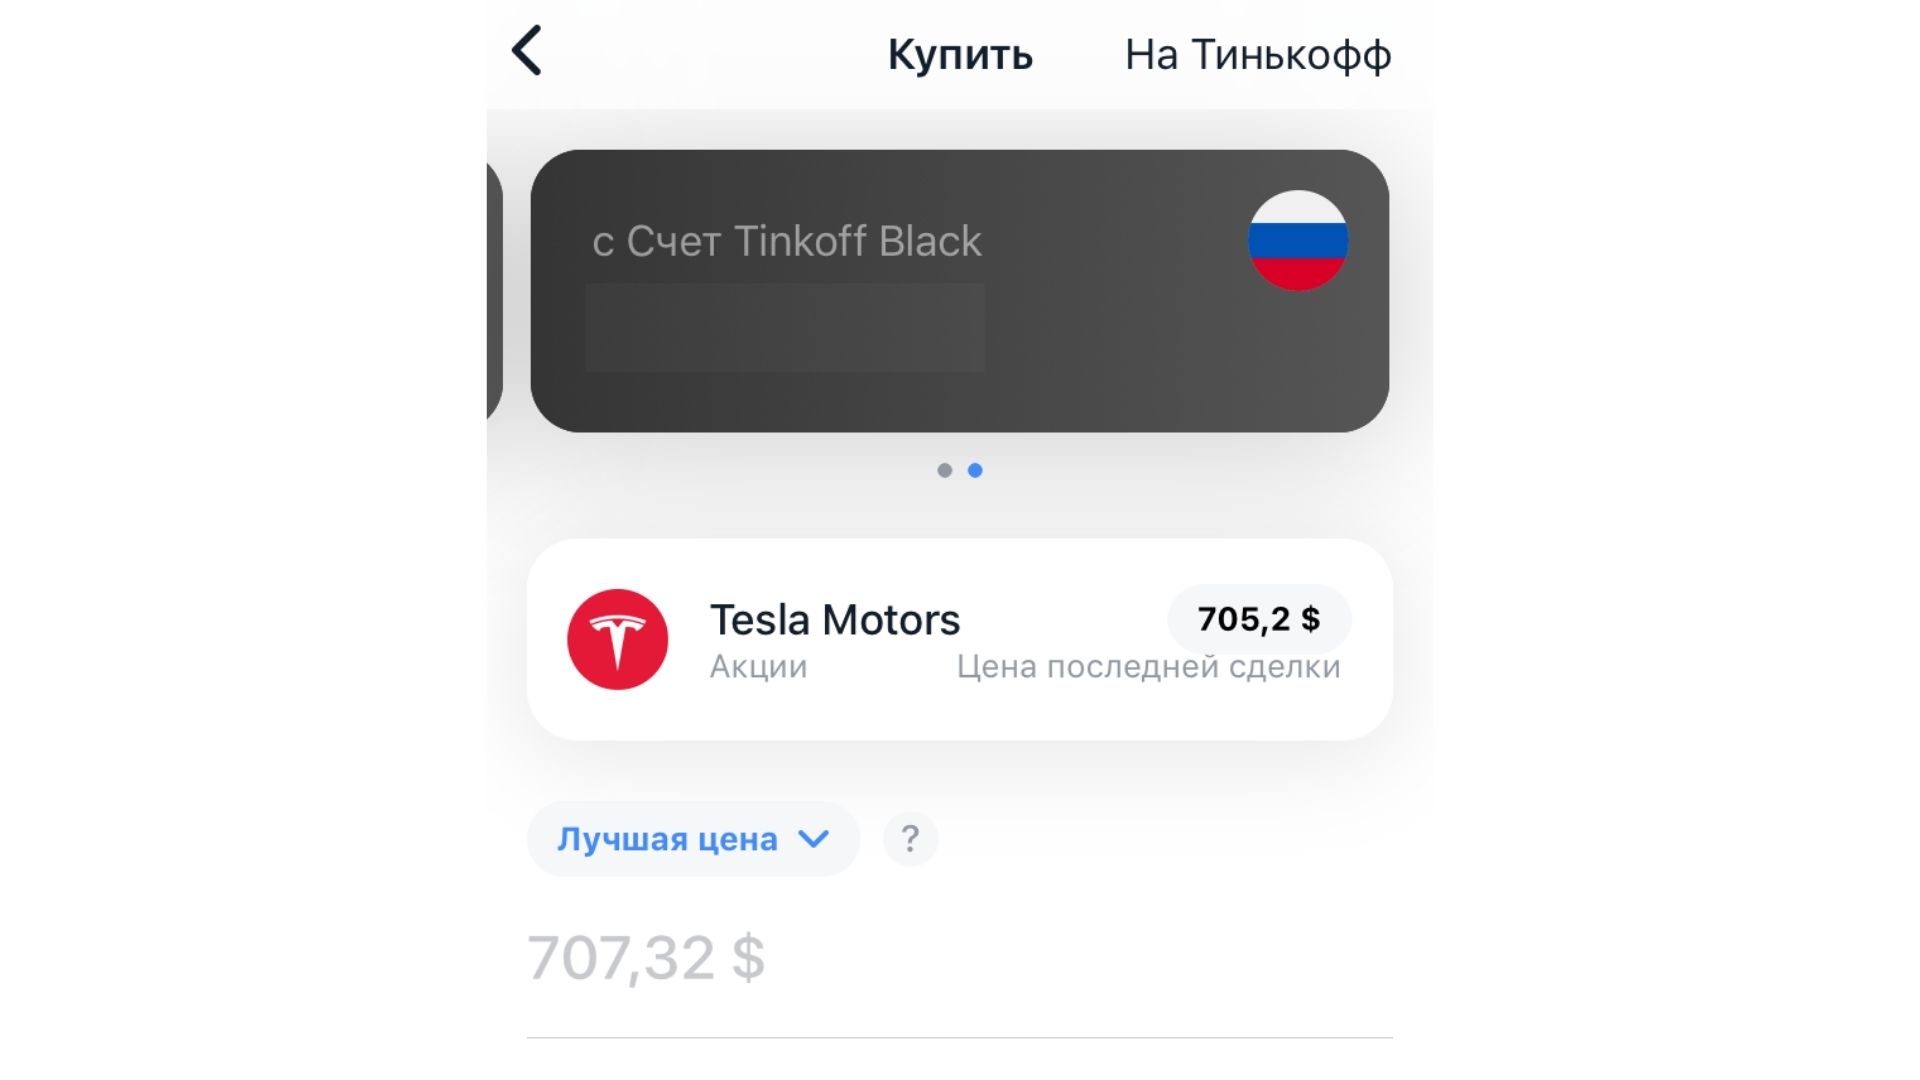 Купить Акции Тесла Моторс физическому лицу в России через Тинькофф Инвестиции